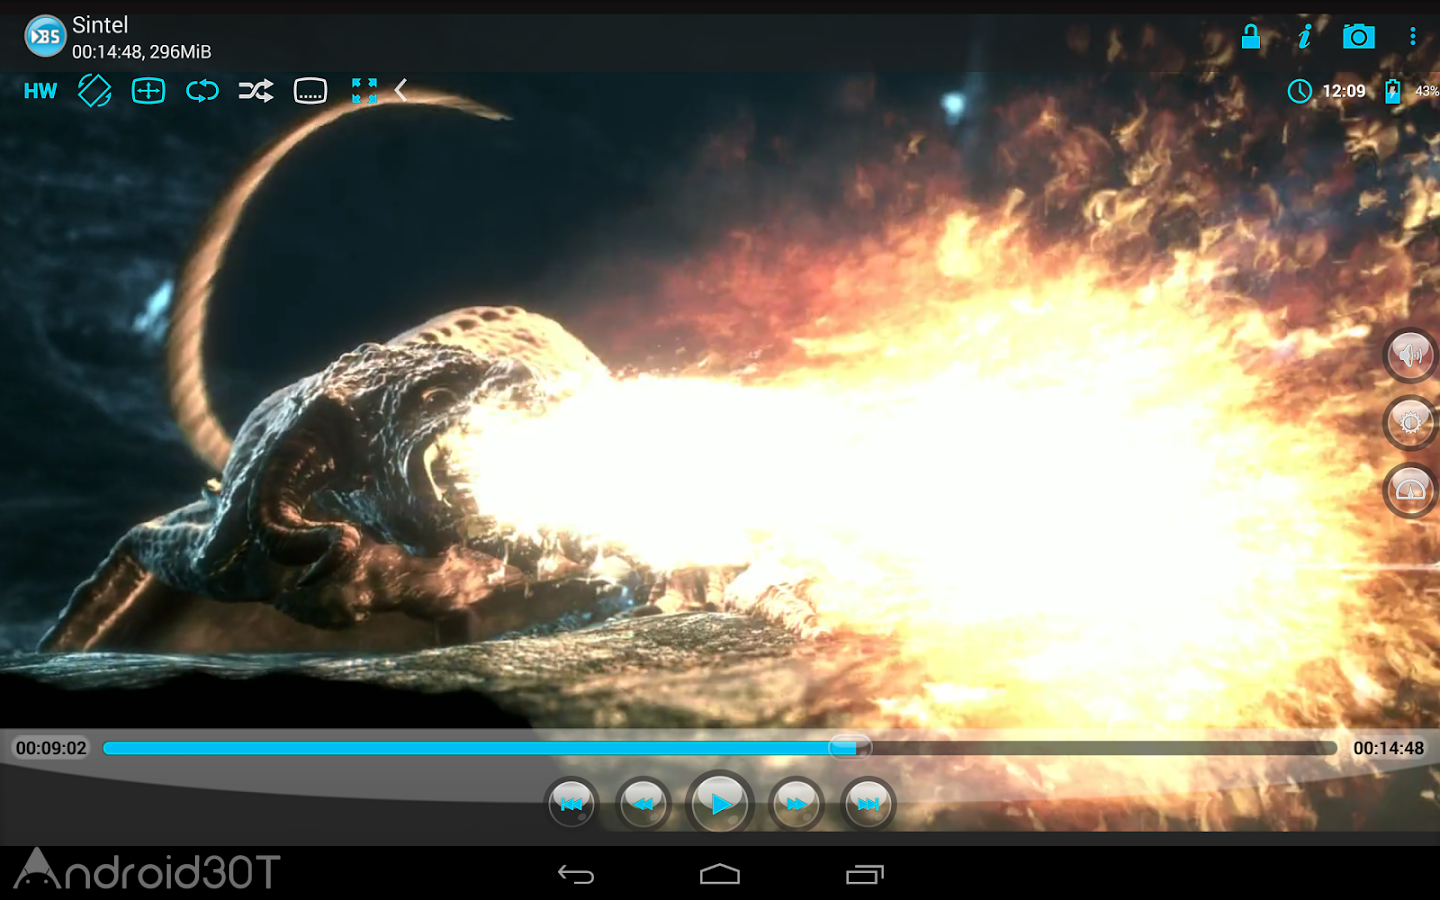 دانلود BSPlayer Full 3.13.234-20210702 – ویدئو پلیر قدرتمند اندروید